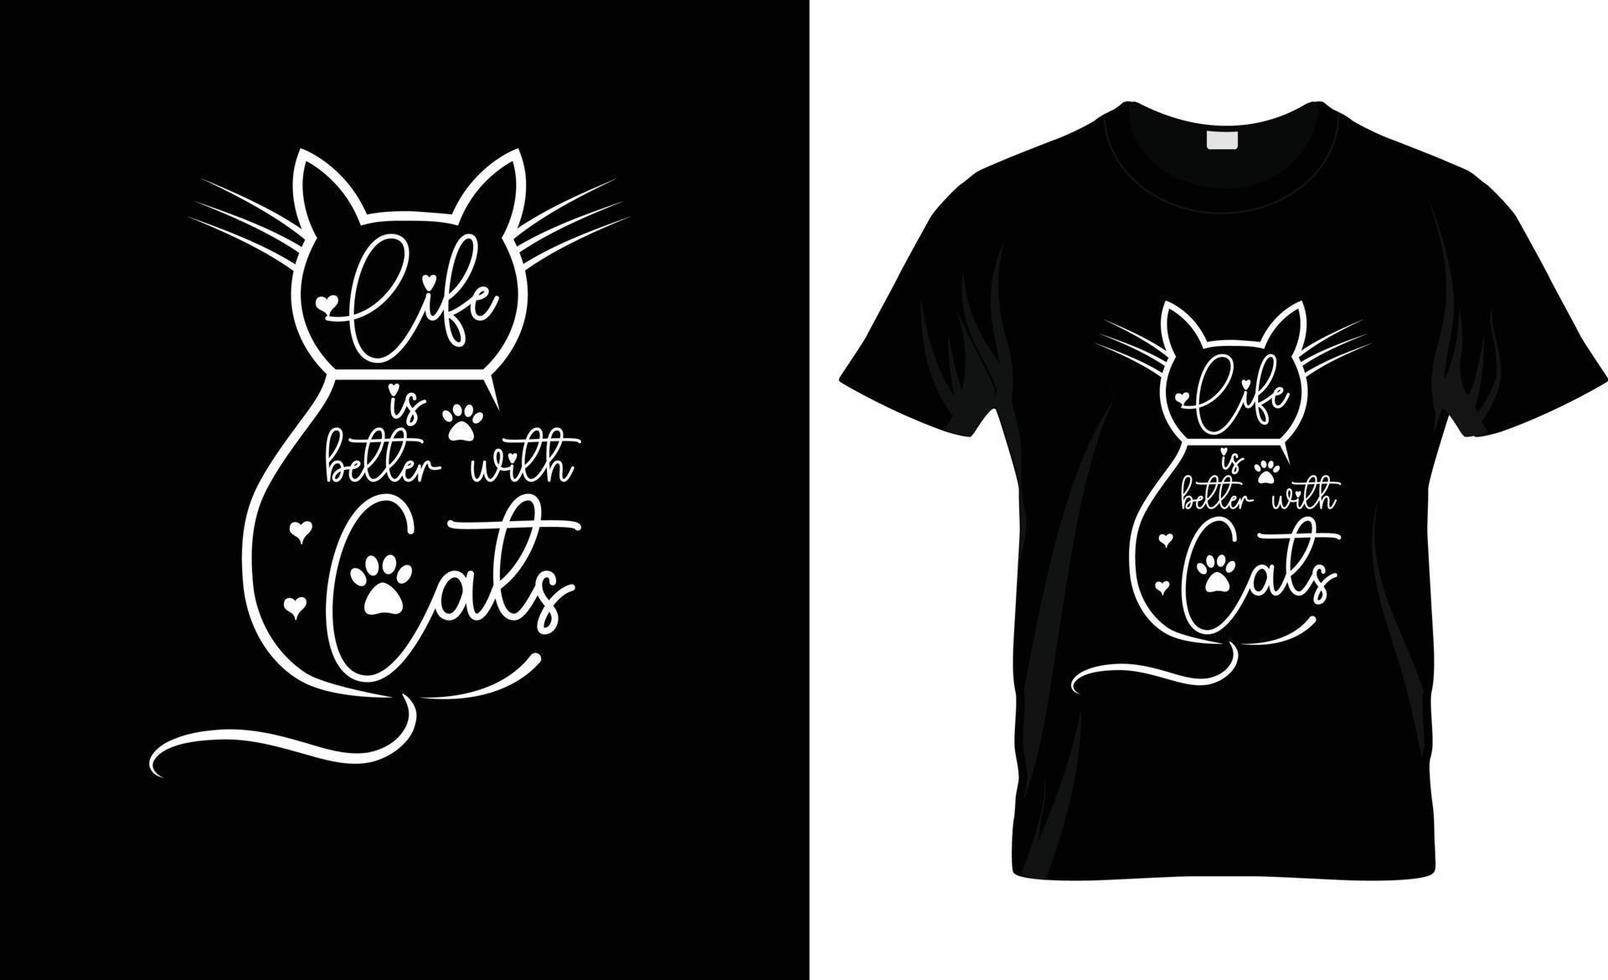 Leben ist besser mit Katzen Zitat T-Shirt Design und Neu Typografie T-Shirt Design. Leben ist besser mit Katze t Hemd Design Vorlage vektor